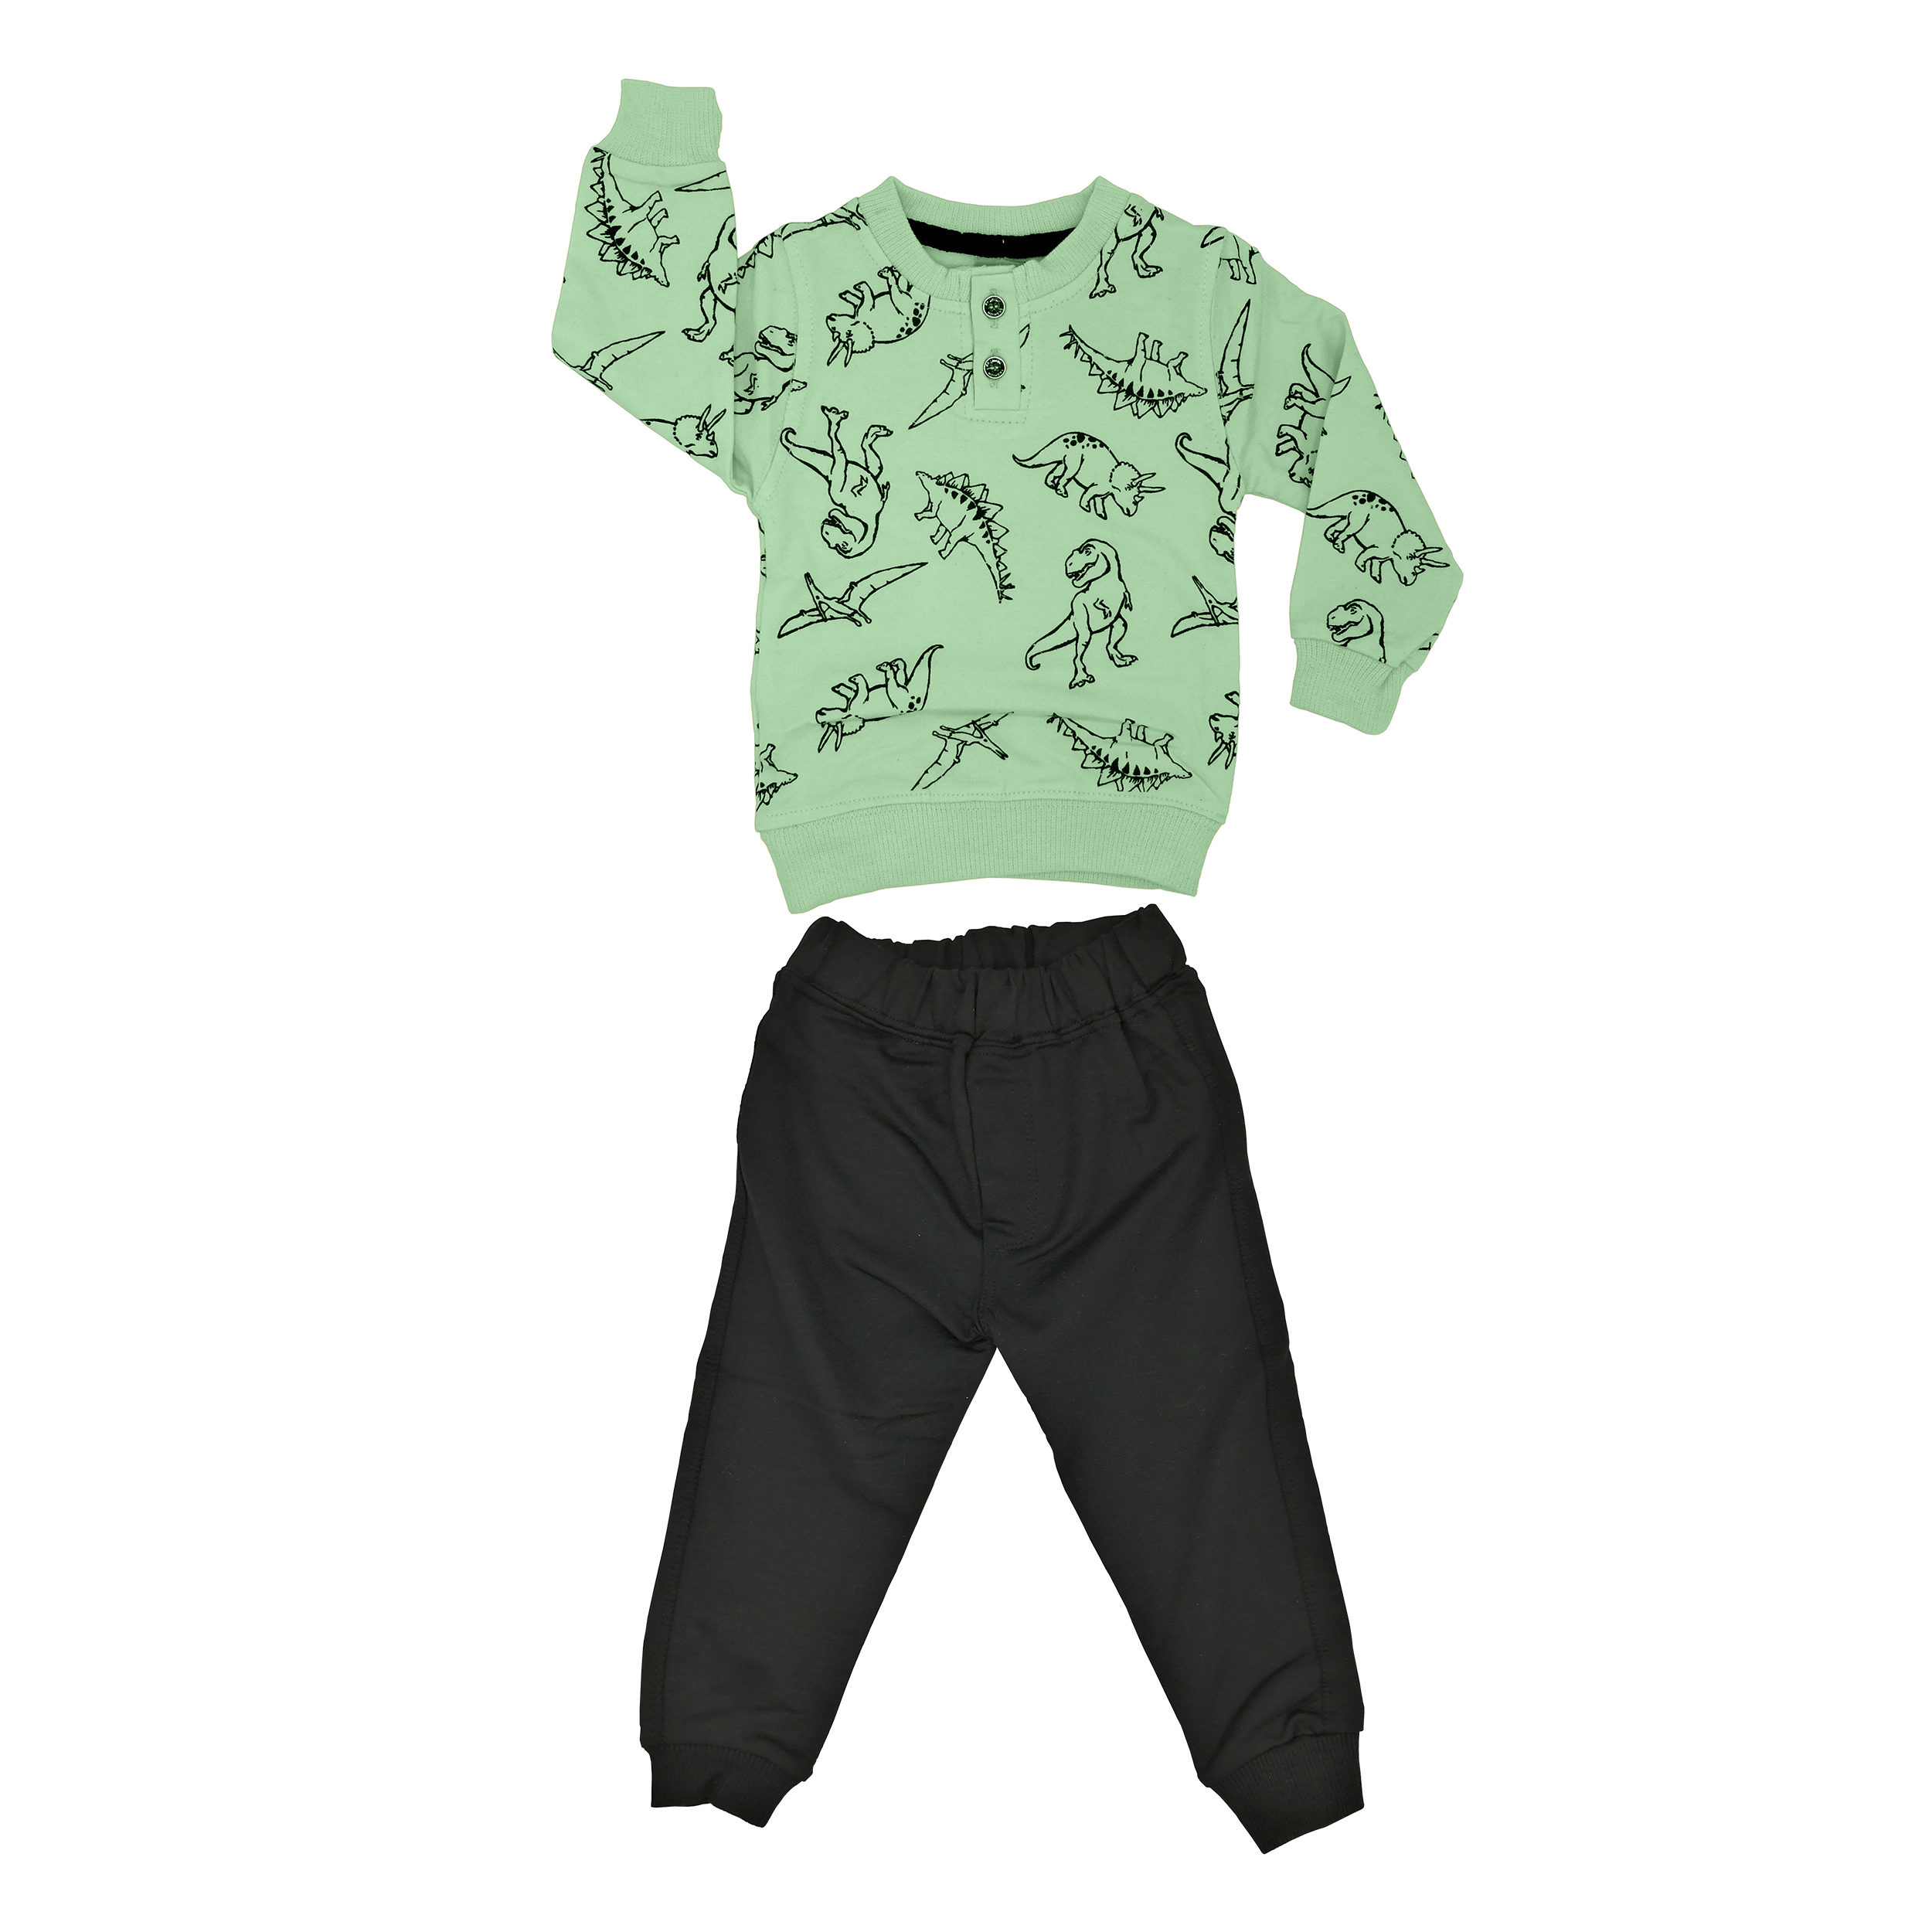 ست تی شرت و شلوار پسرانه مدل دایناسور کد G1  رنگ سبز